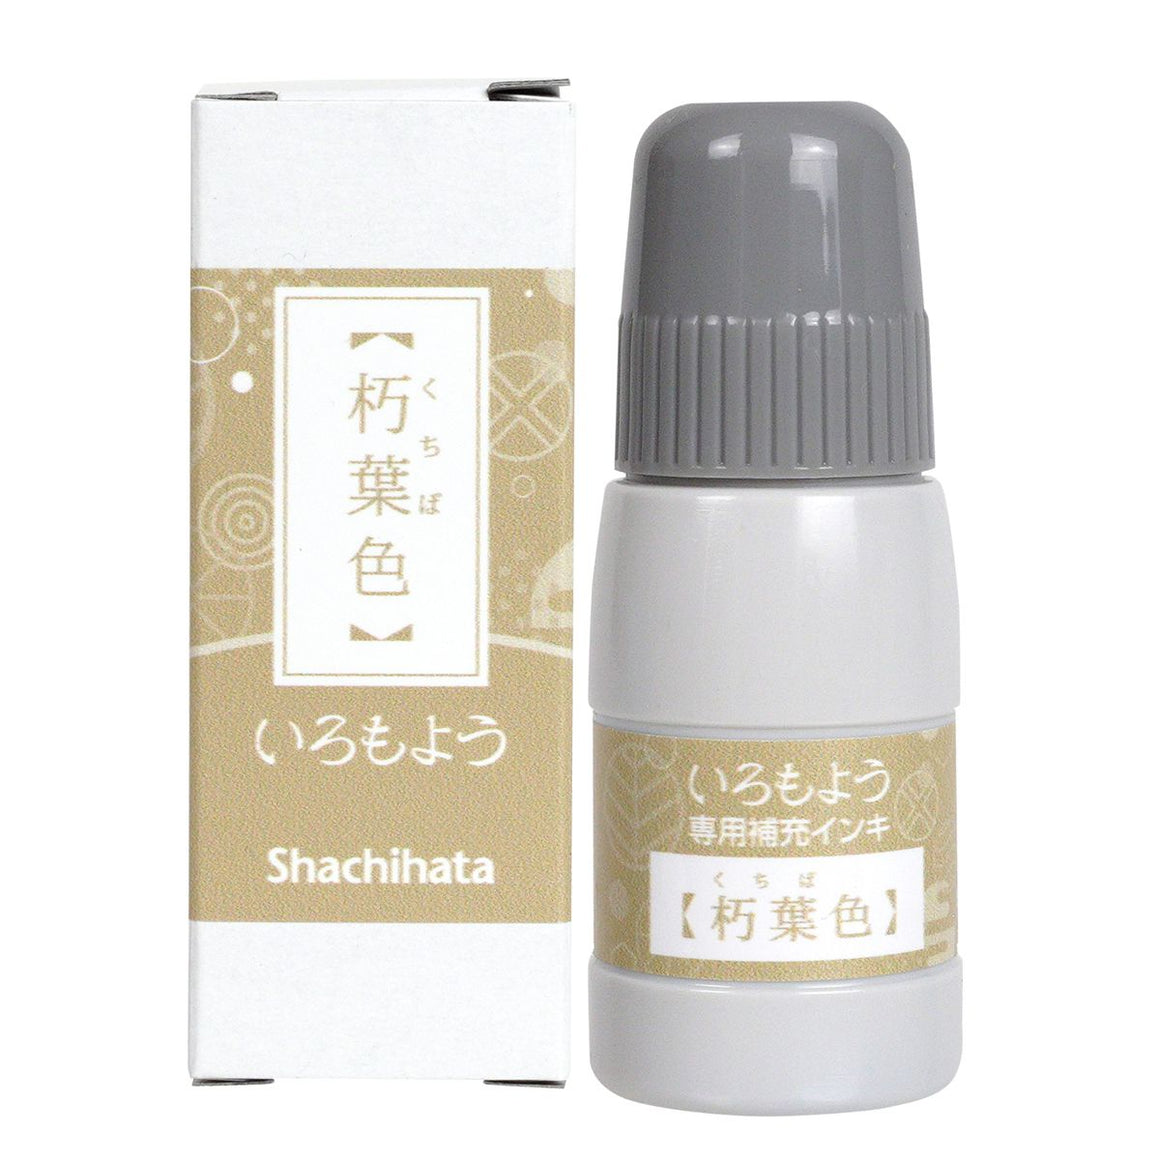 REFILL: Shachihata Iromoyo Ink Refill Bottle - Kuchibairo 朽葉色 - SAC-20-OCG